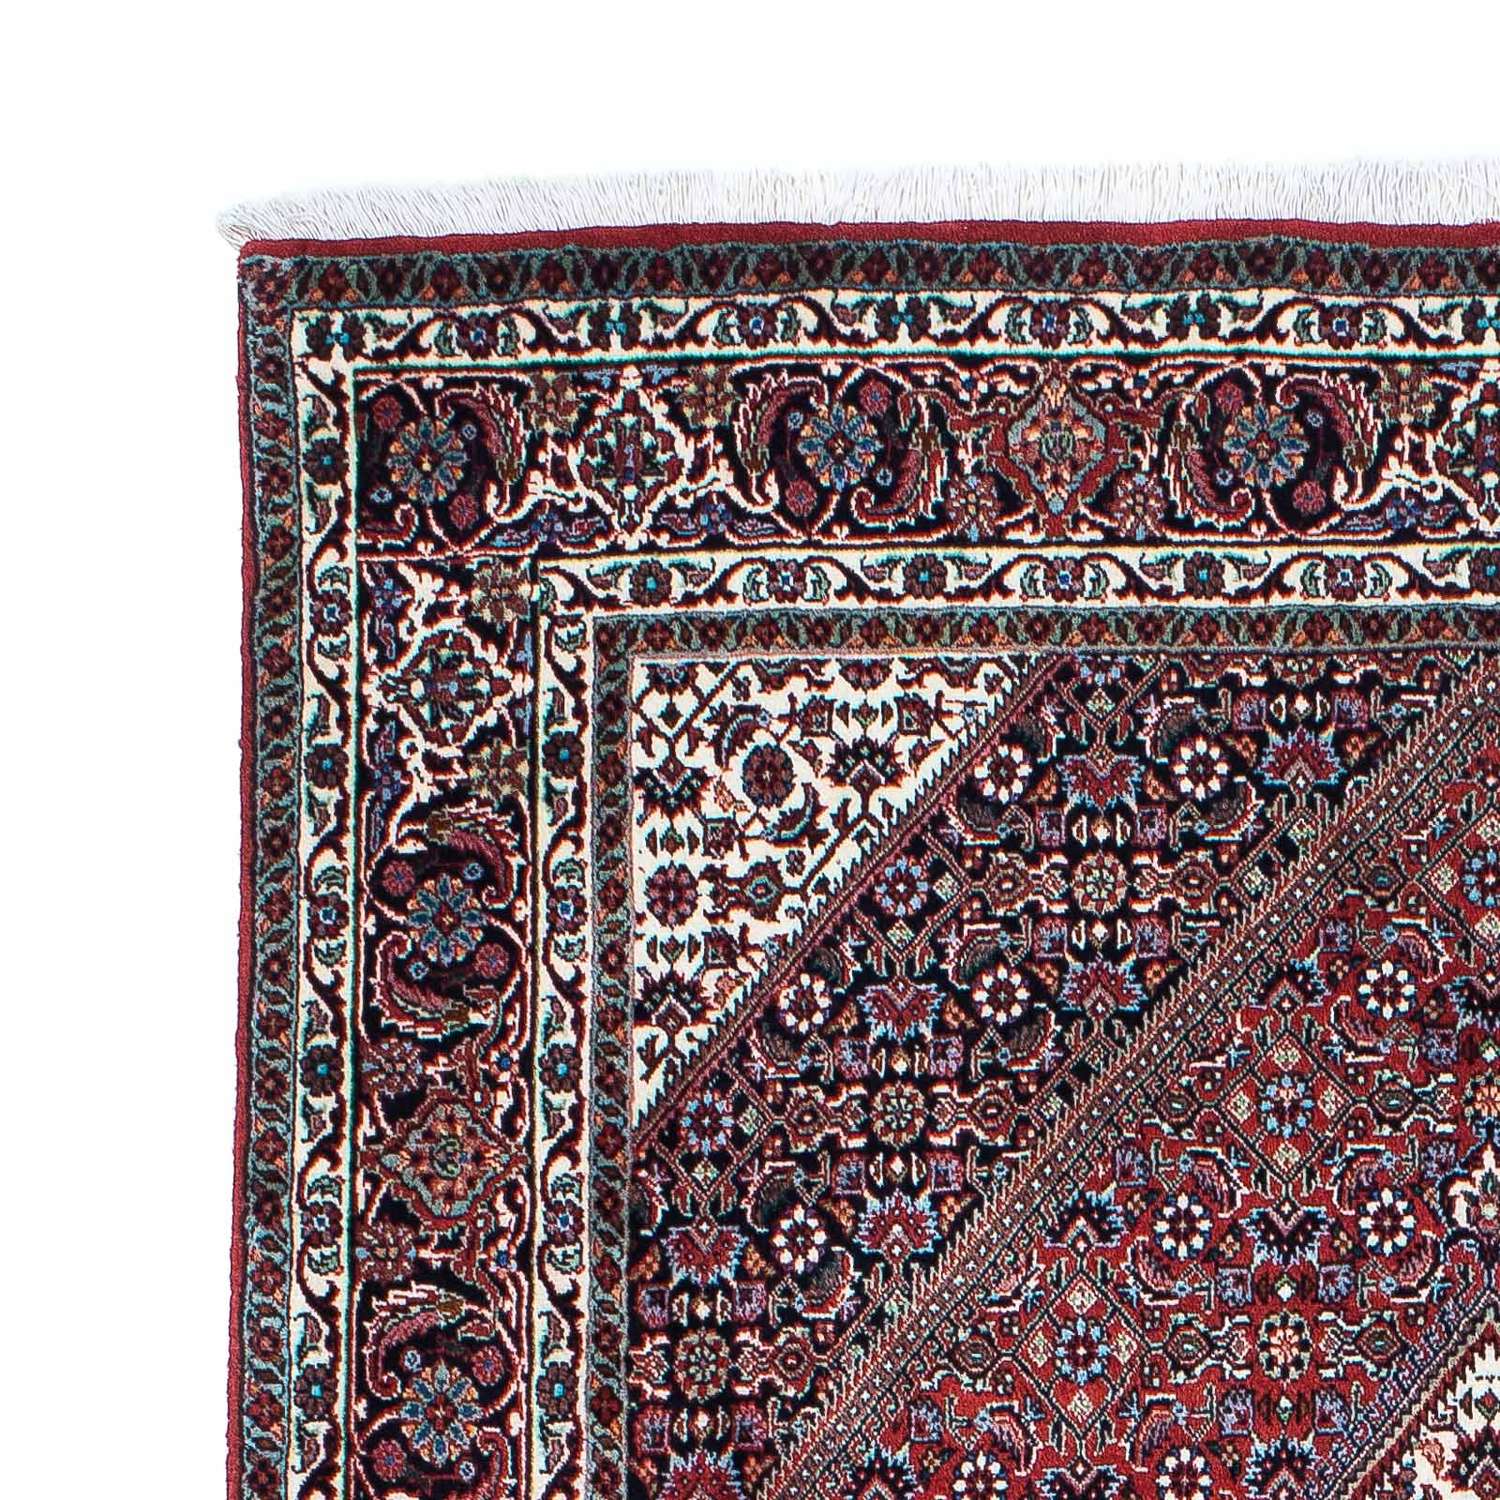 Tapis persan - Bidjar - 209 x 132 cm - rouge clair